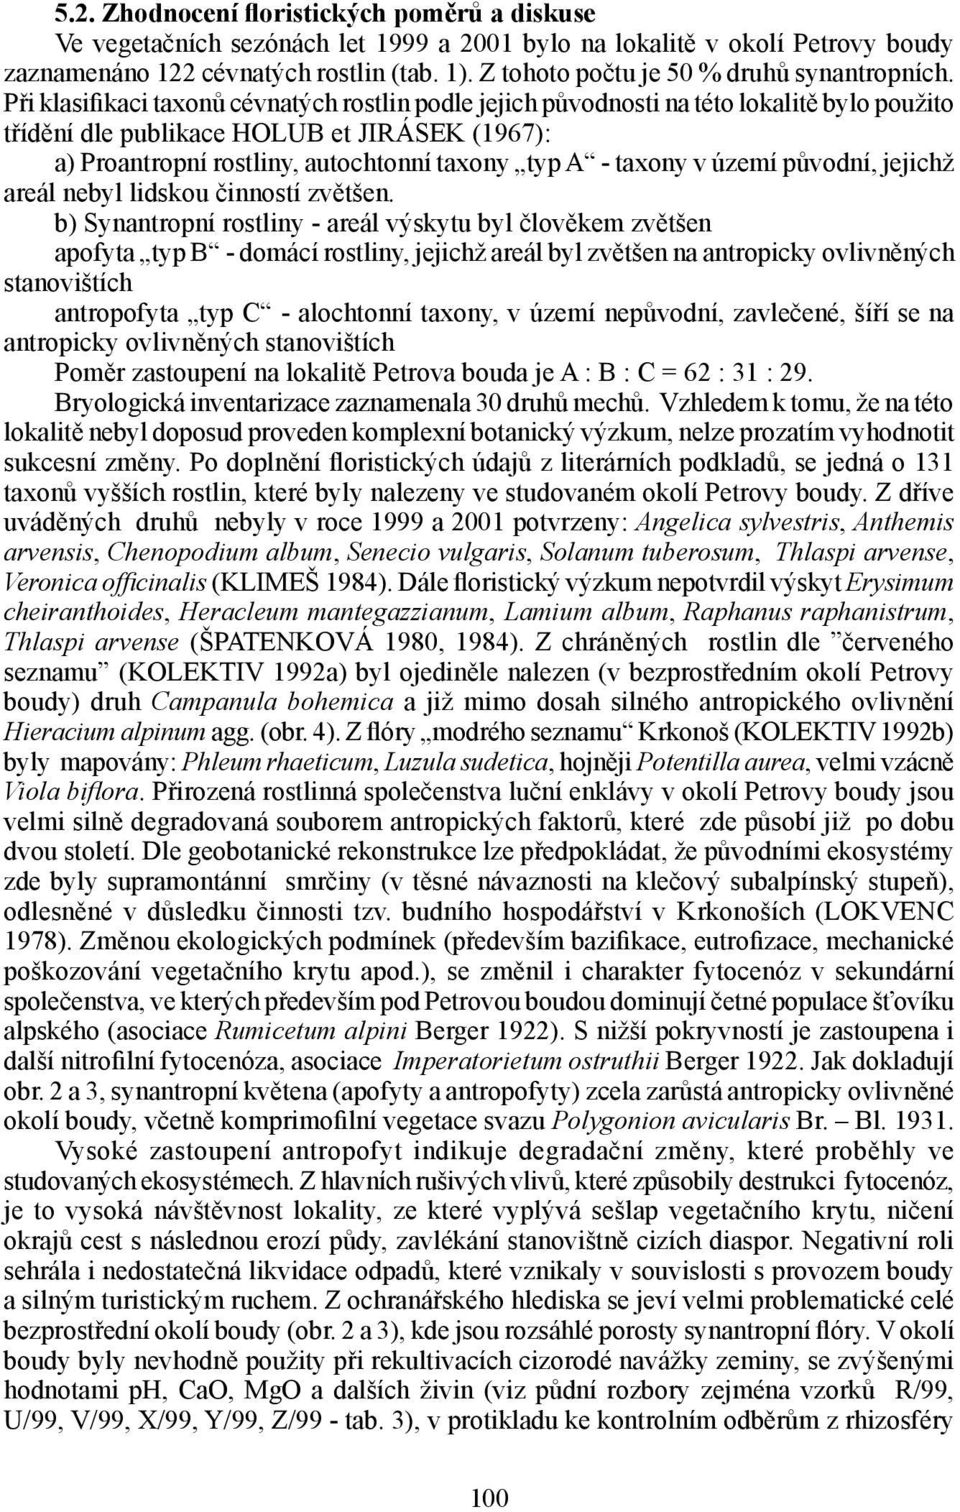 Při klasifikaci taxonů cévnatých rostlin podle jejich původnosti na této lokalitě bylo použito třídění dle publikace HOLUB et JIRÁSEK (1967): a) Proantropní rostliny, autochtonní taxony typ A -